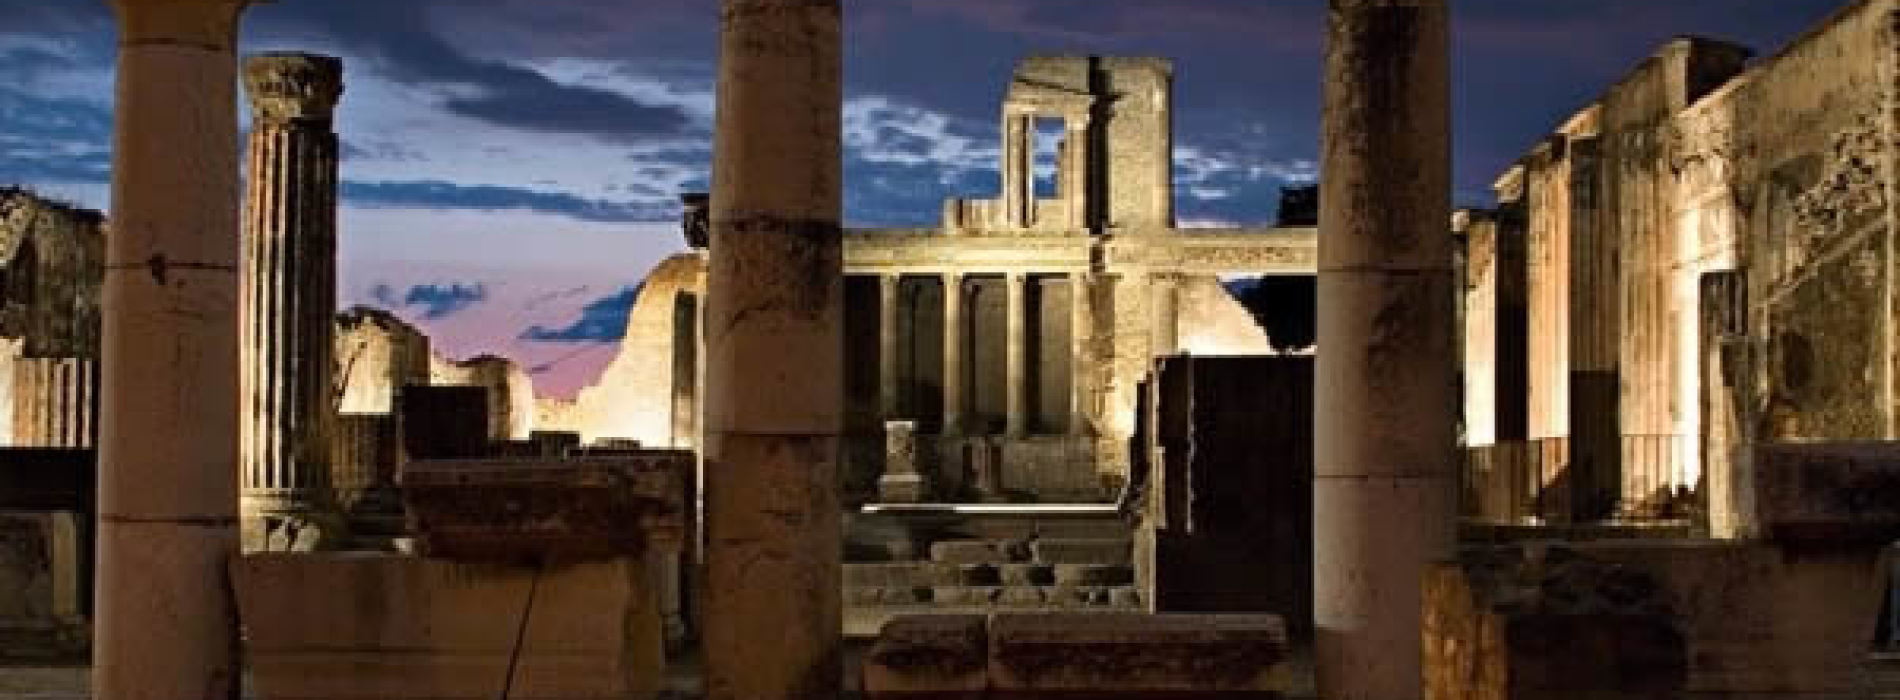 Una notte a Pompei, l’antichità sotto le stelle